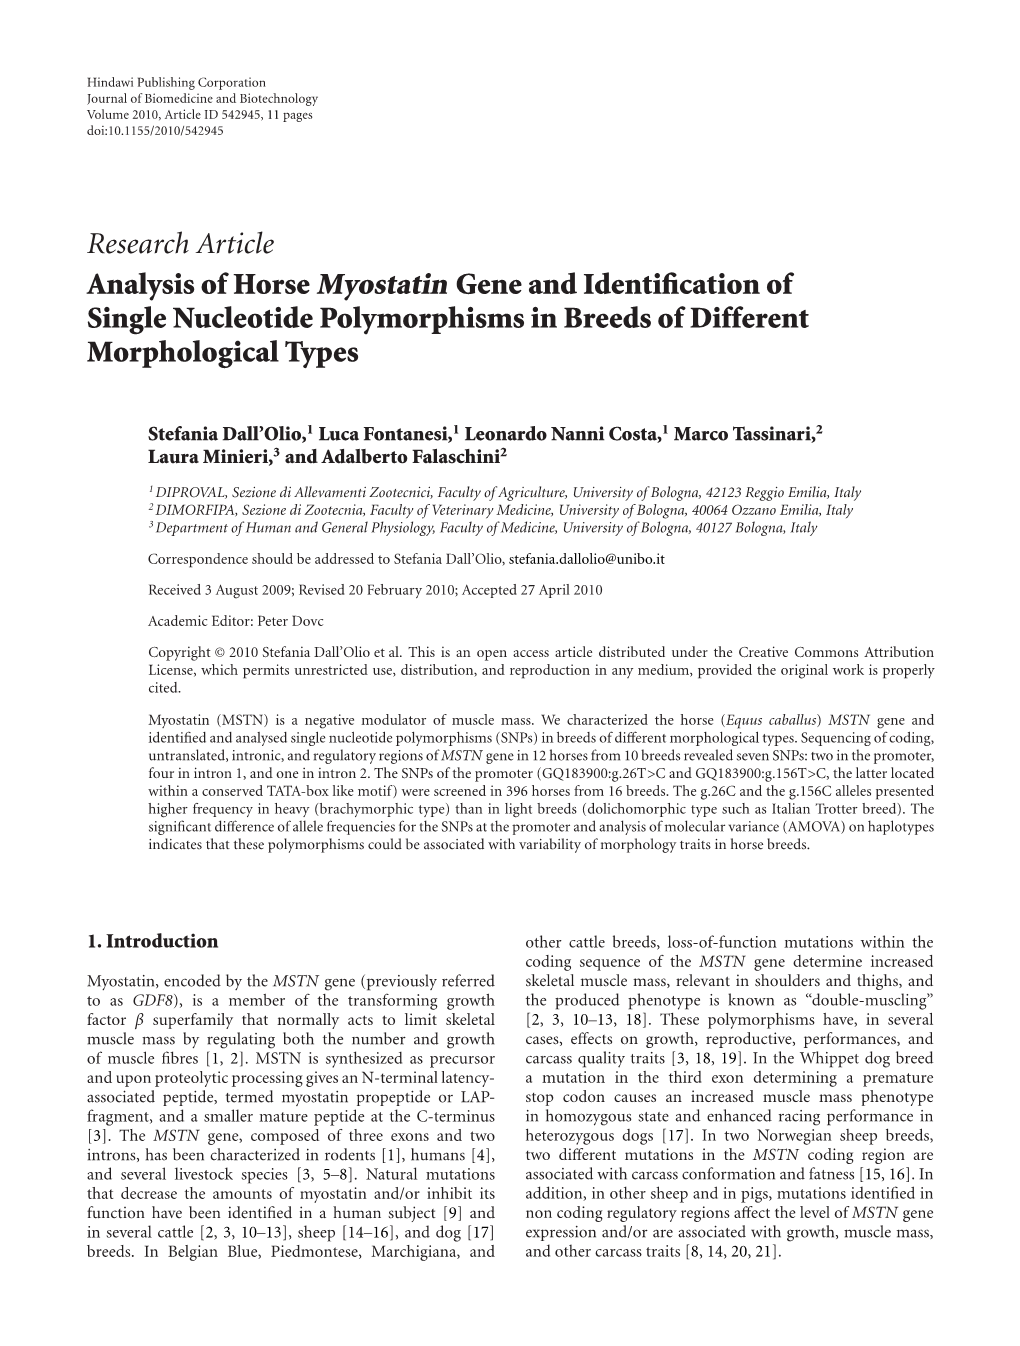 Analysis of Horse Myostatin Gene and Identification of Single Nucleotide